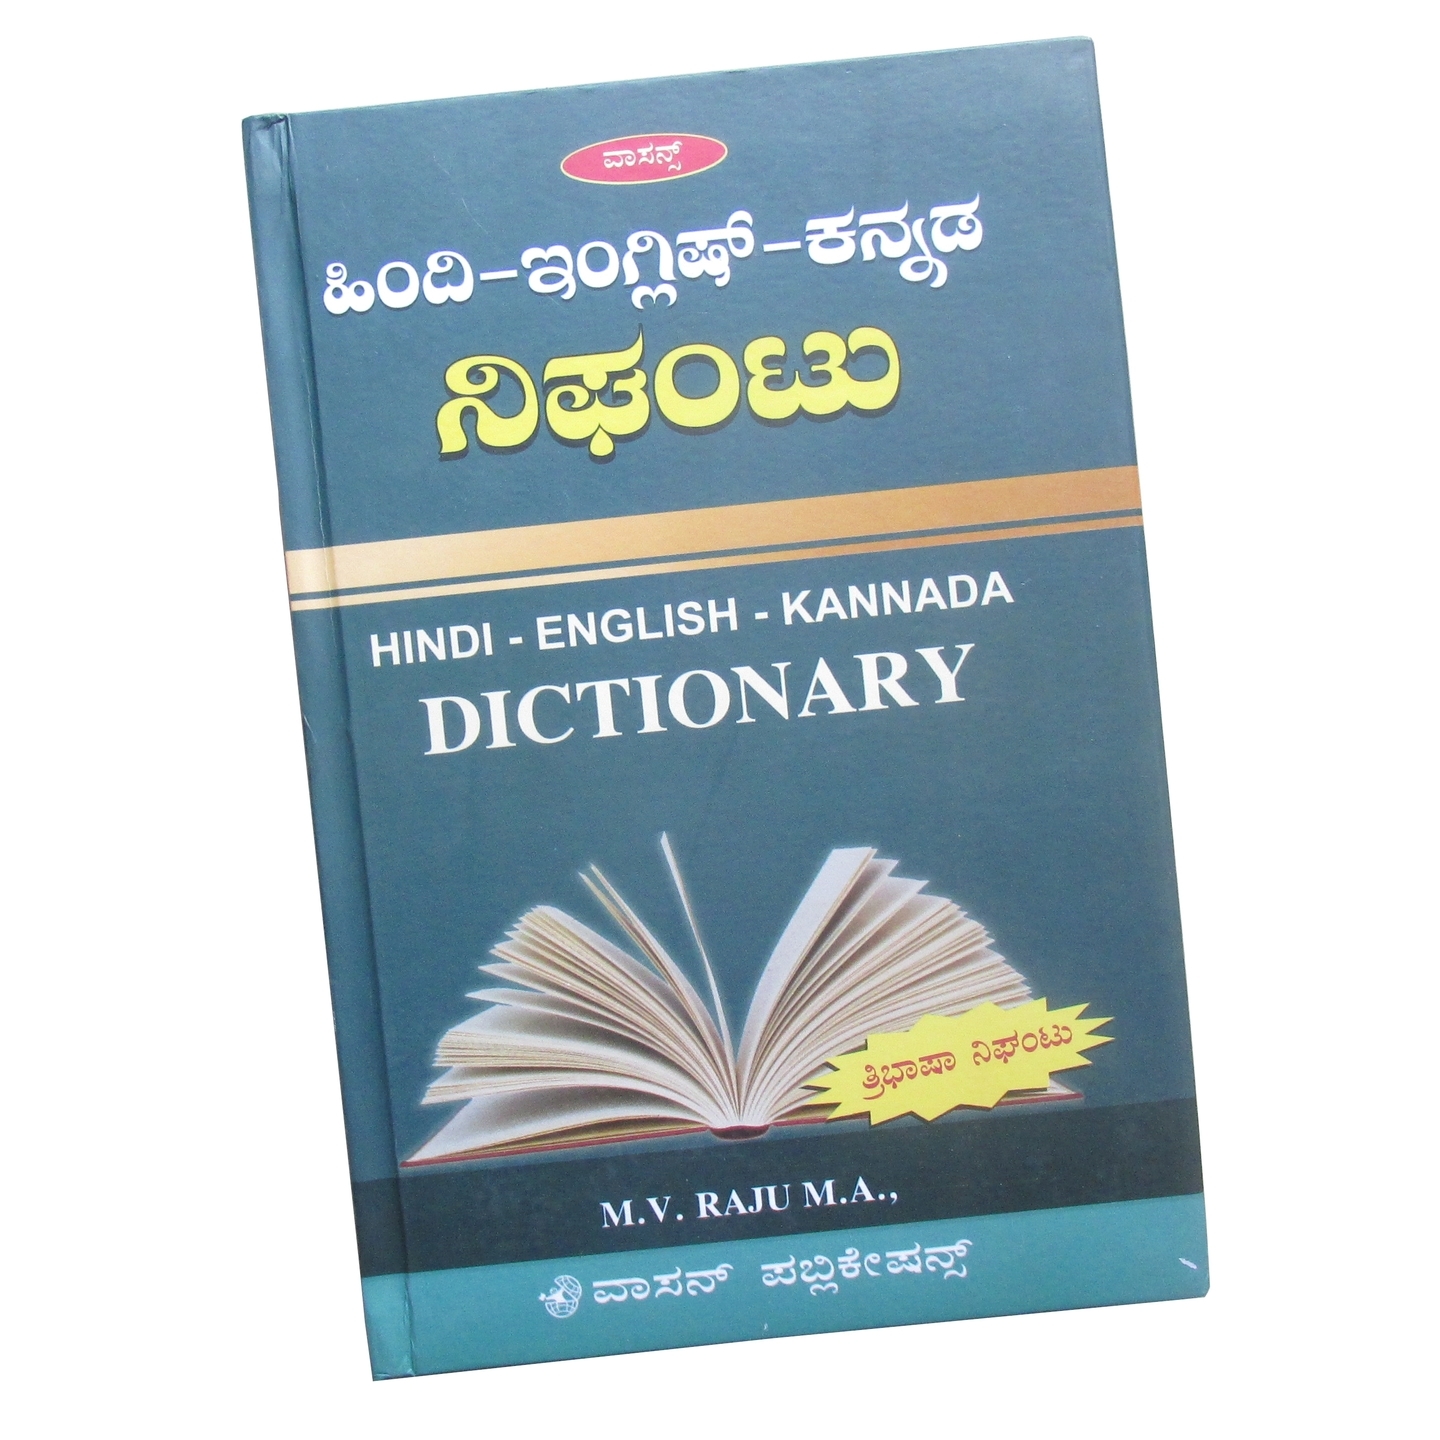 Hindi - English - Kannada Dictionary Hard Cover